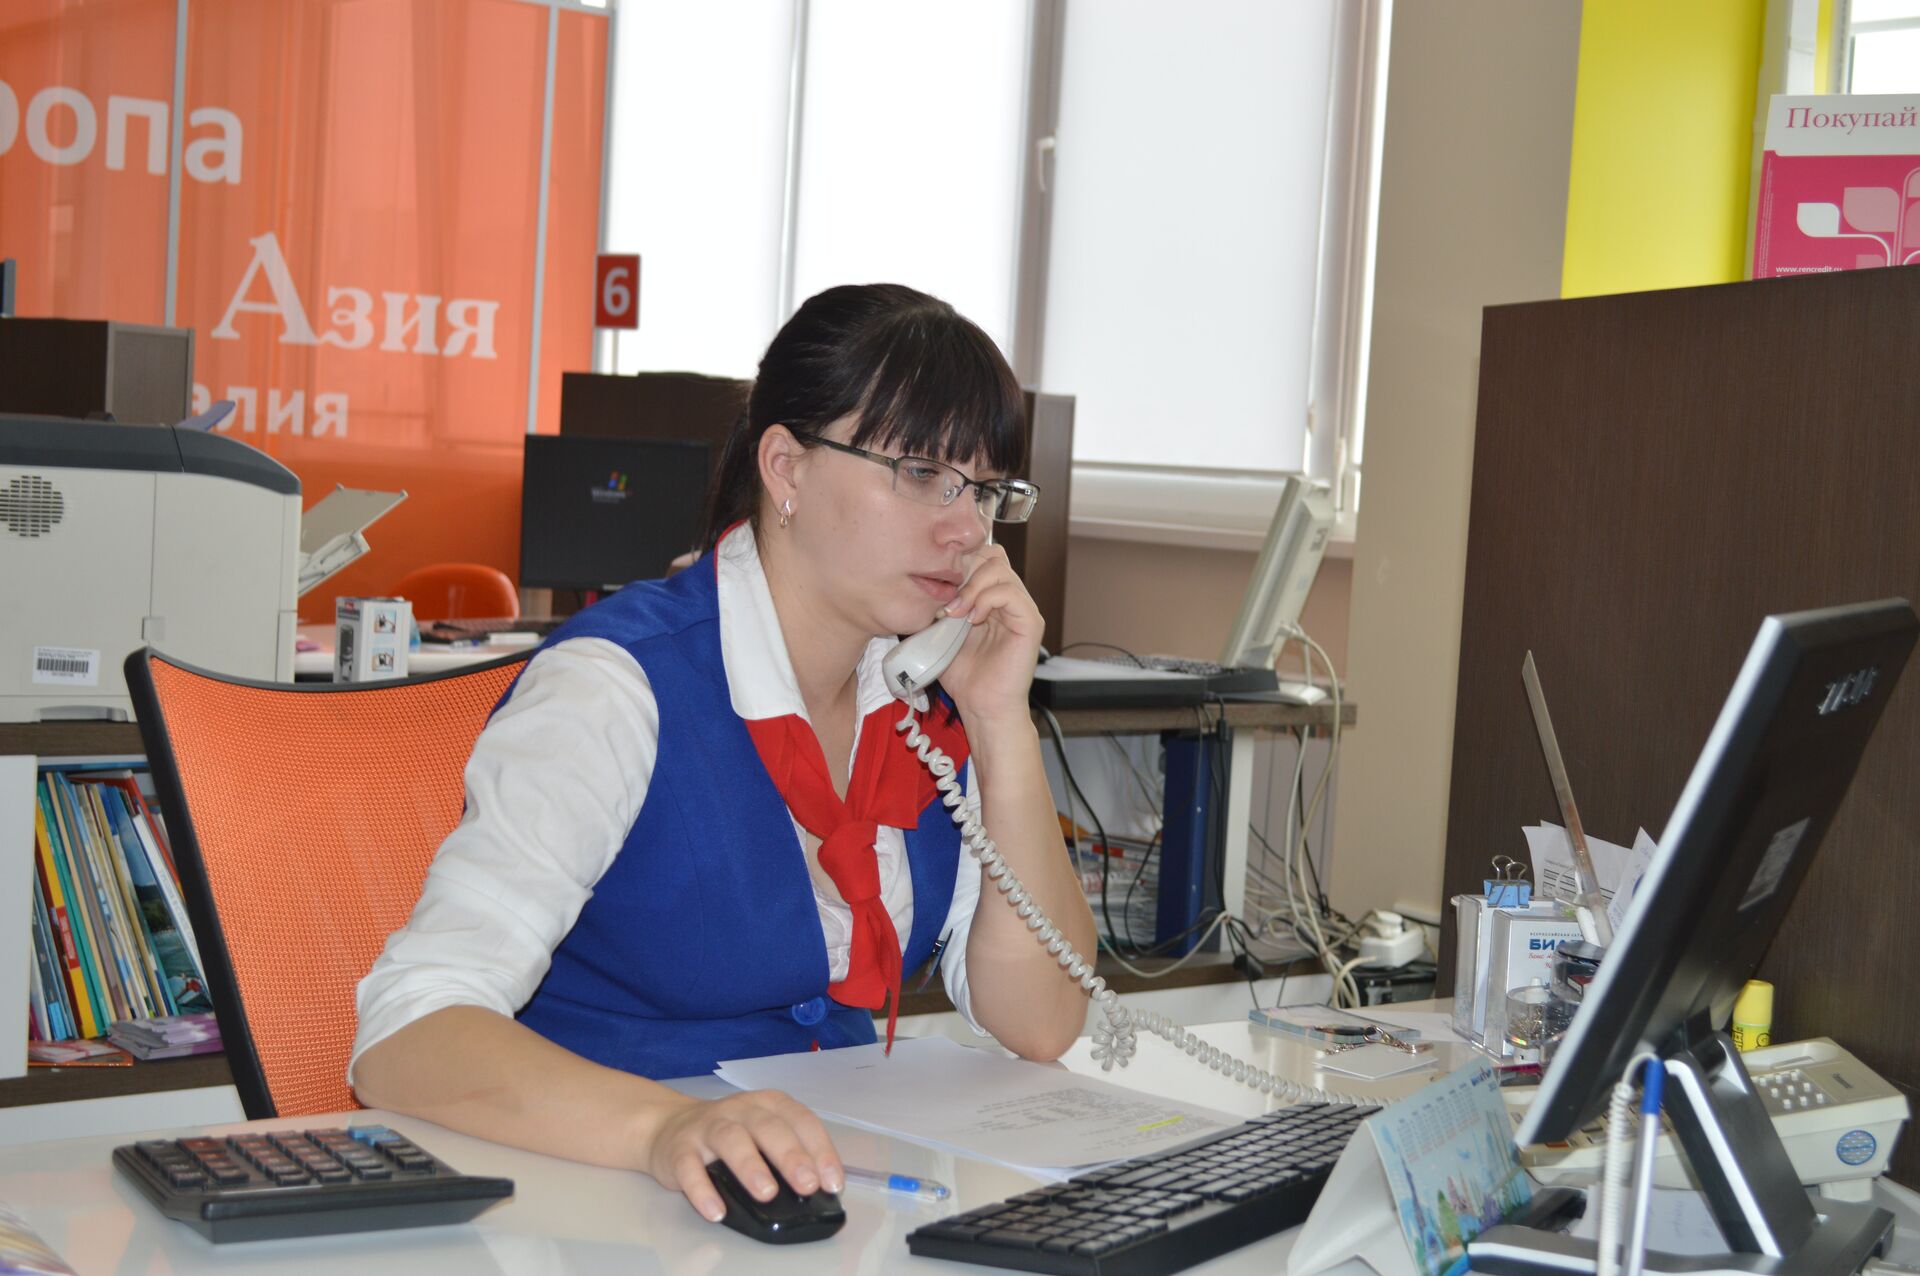 Продажа льготных авиабилетов началась во Владивостоке - ПРАЙМ, 1920, 31.03.2021